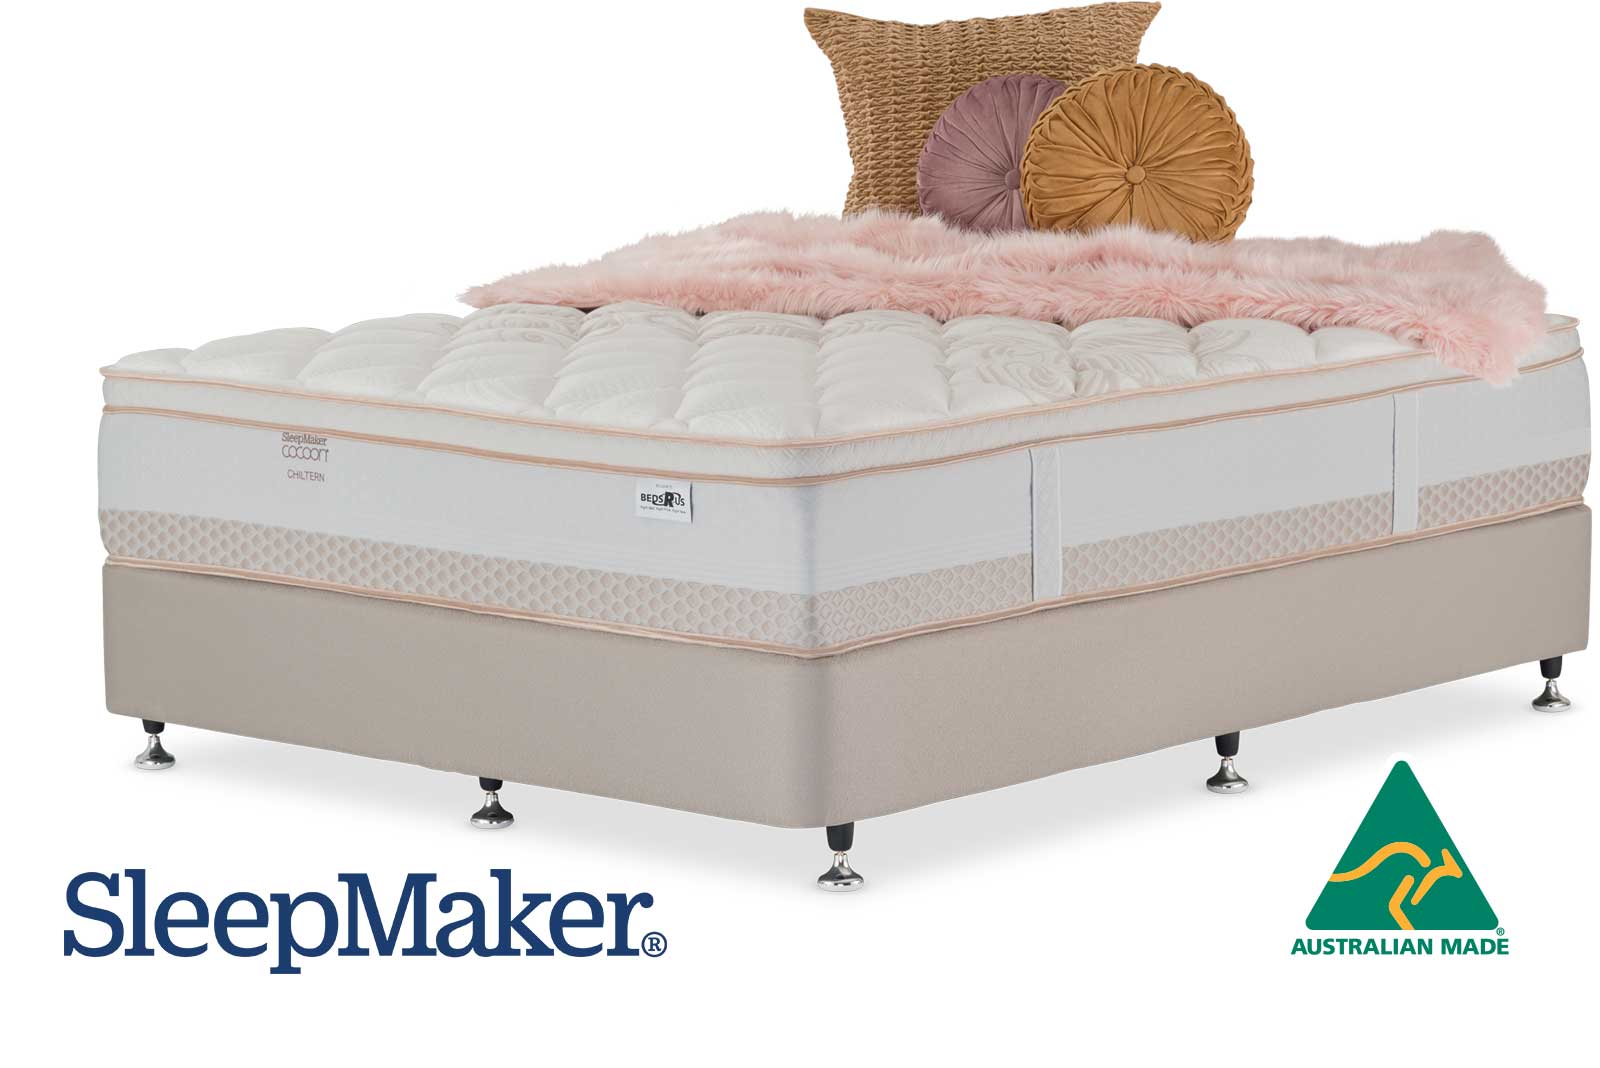 sleepmaker luxury mattress review